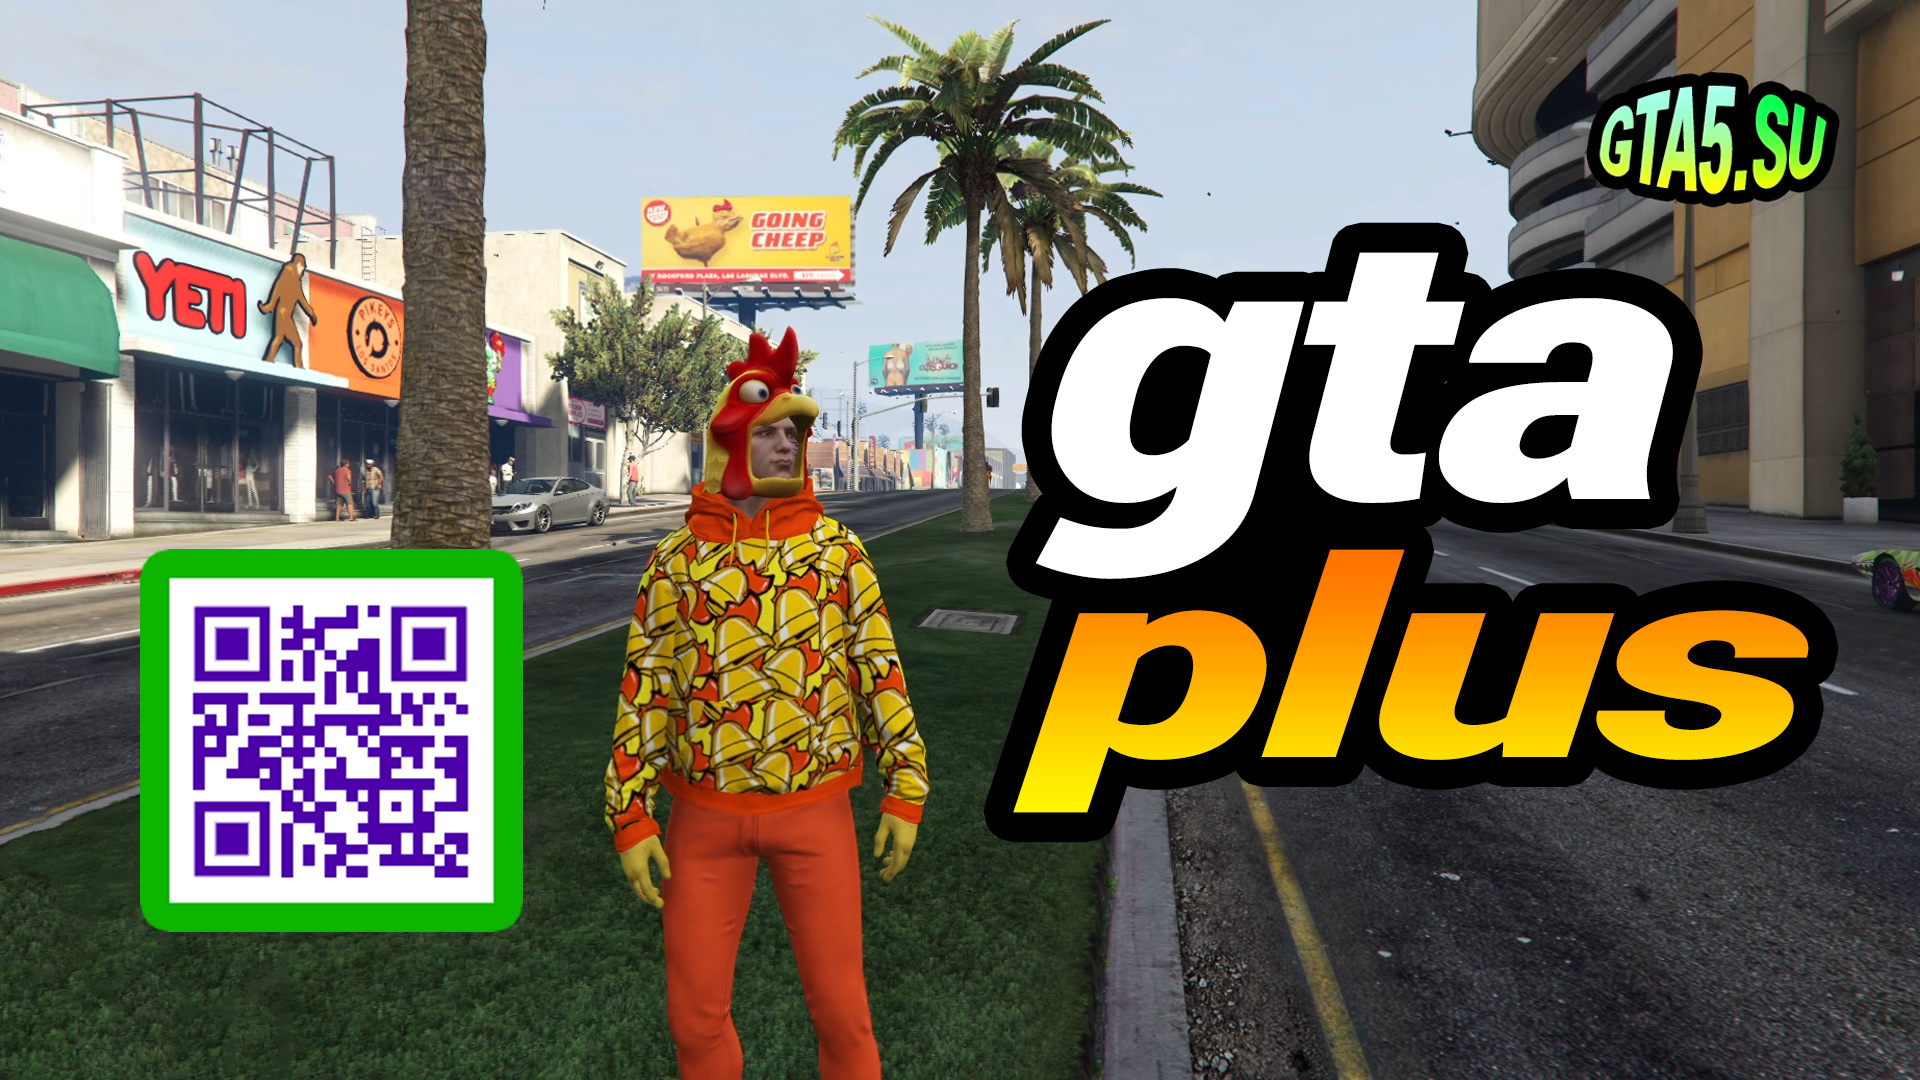 Подписка GTA Plus от Rockstar Games позволяет получать бонусы в GTA Online